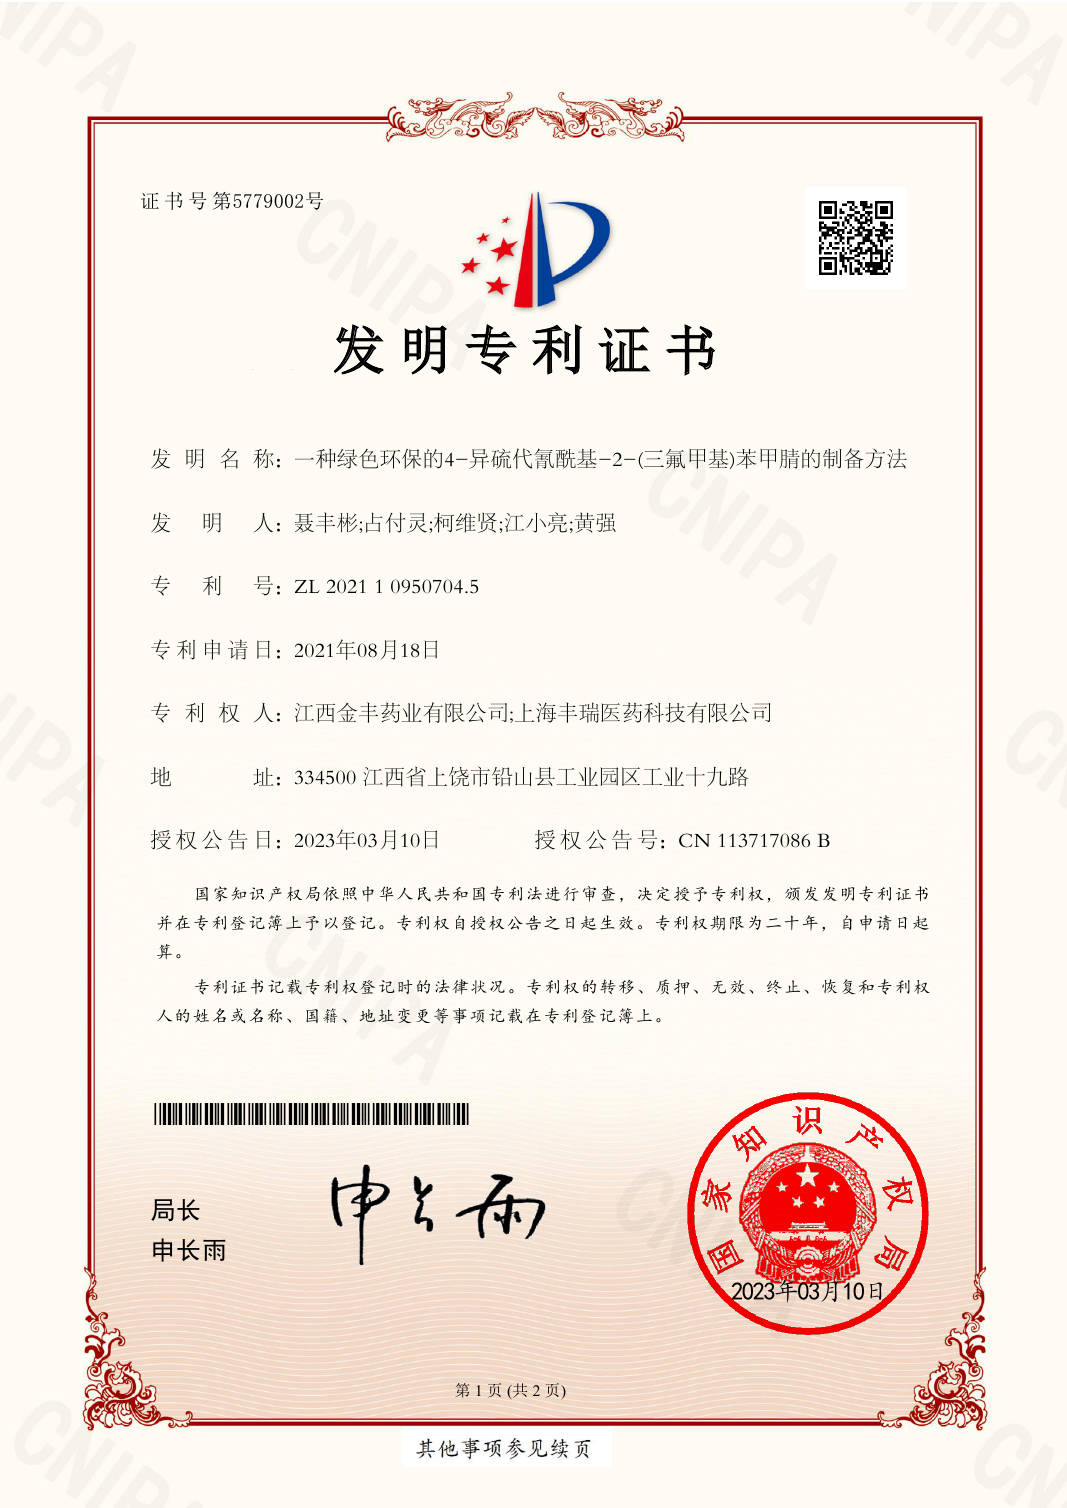 2021109595474 Invention Patent Certificate EZ13(signature)